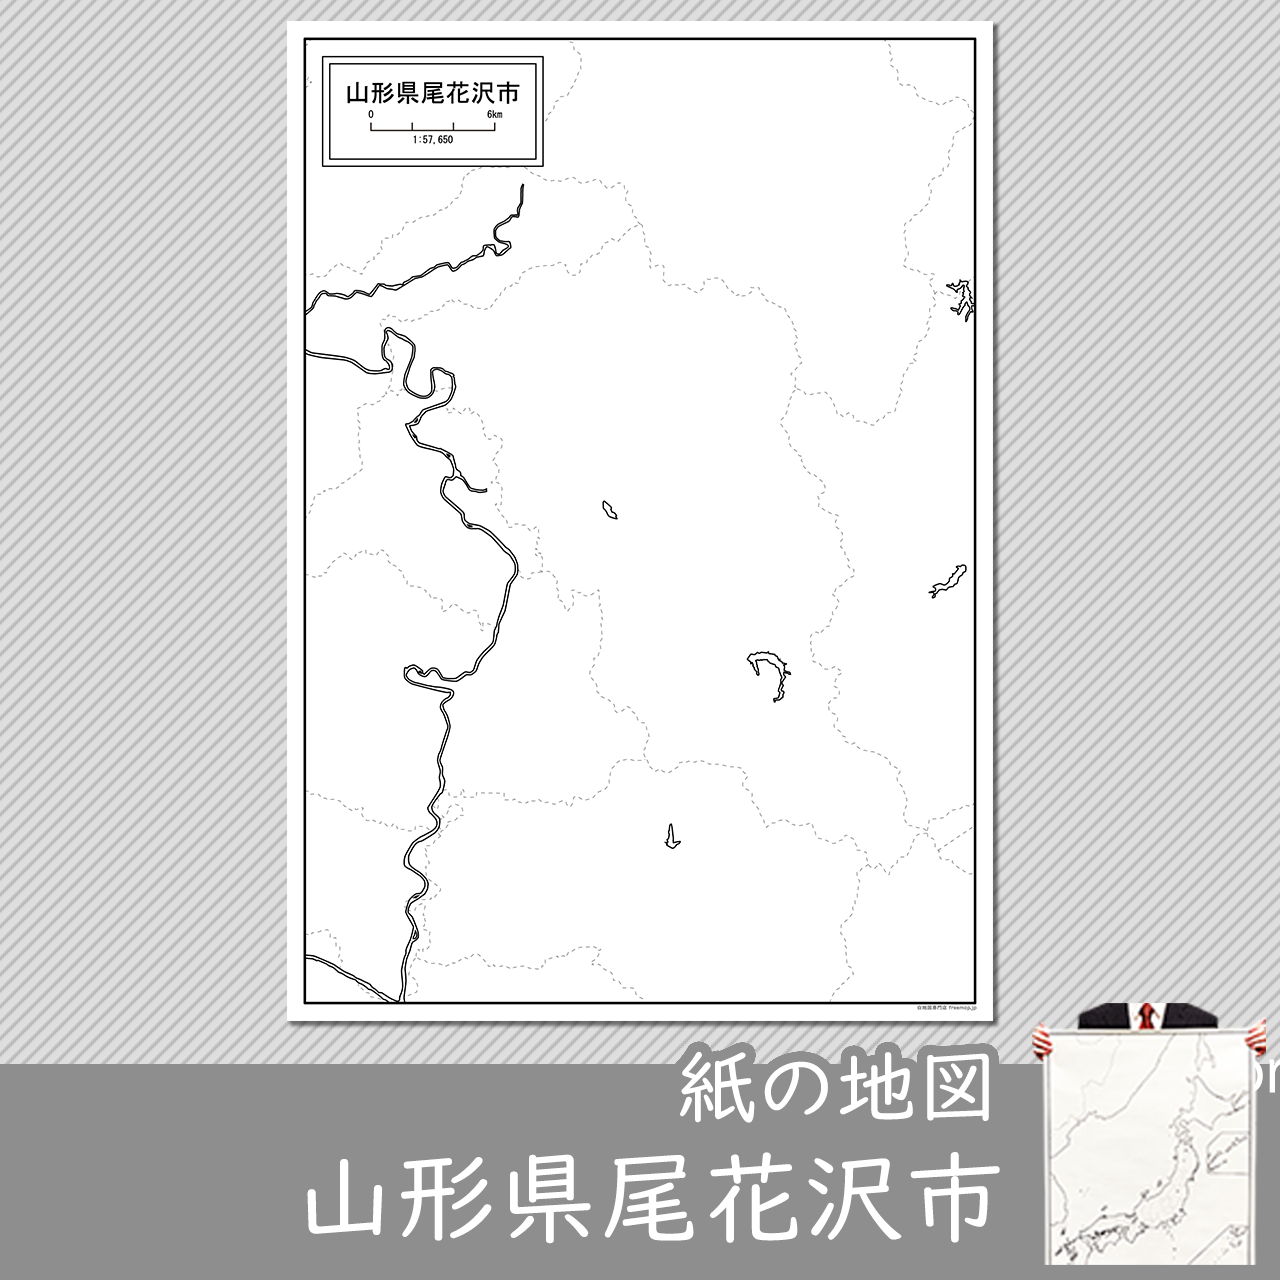 尾花沢市の紙の白地図のサムネイル